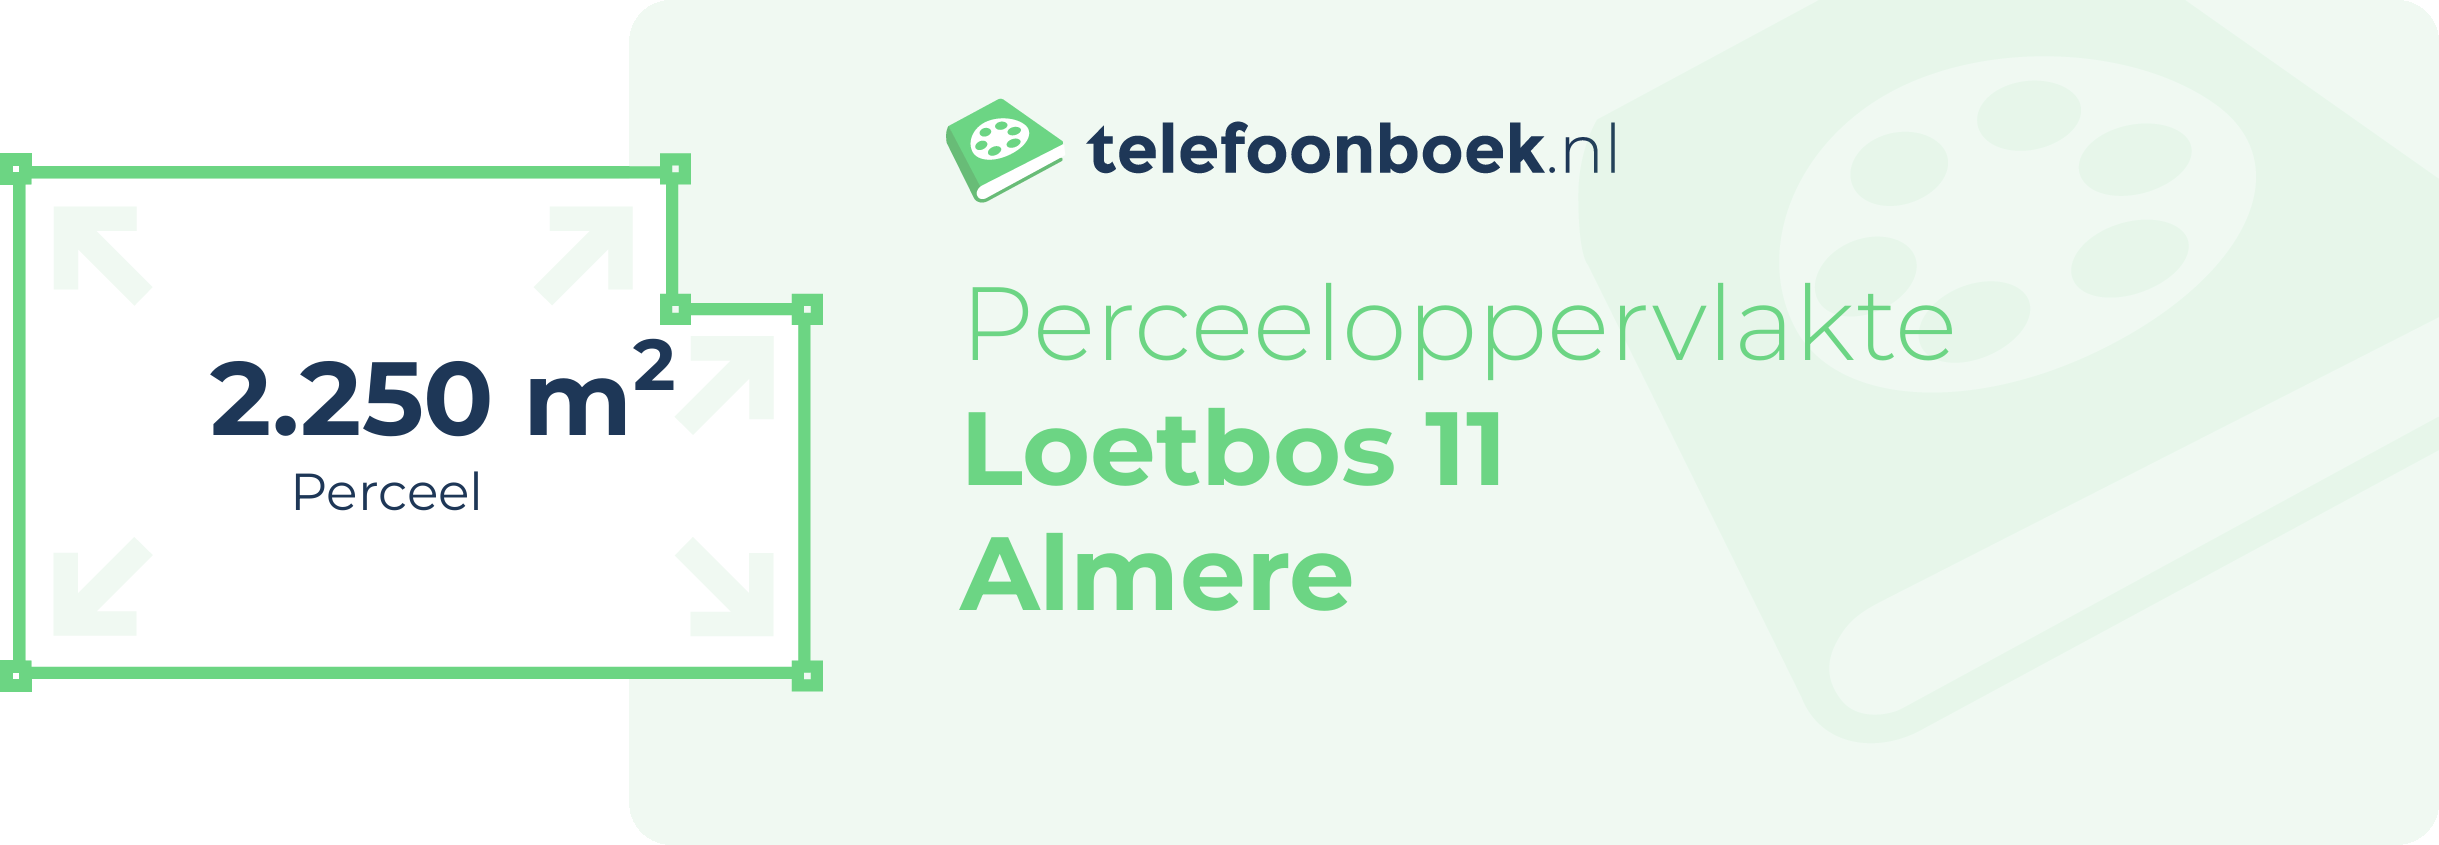 Perceeloppervlakte Loetbos 11 Almere